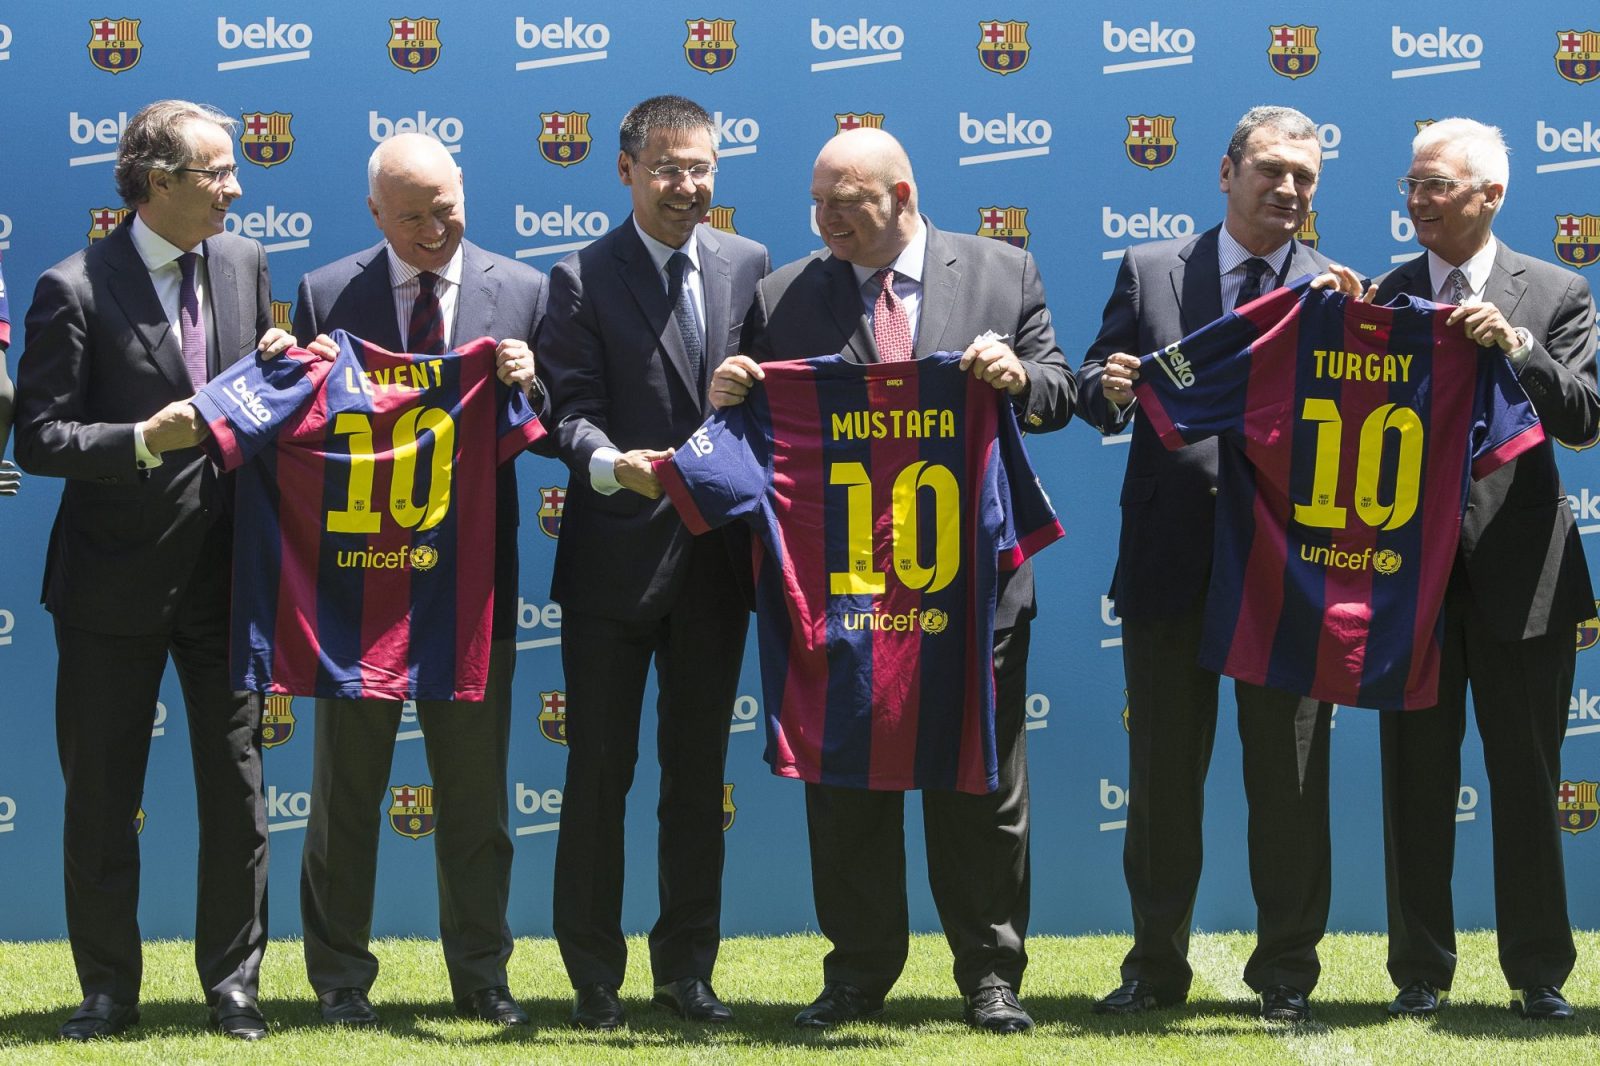 Beko postao globalni sponzor Barcelone